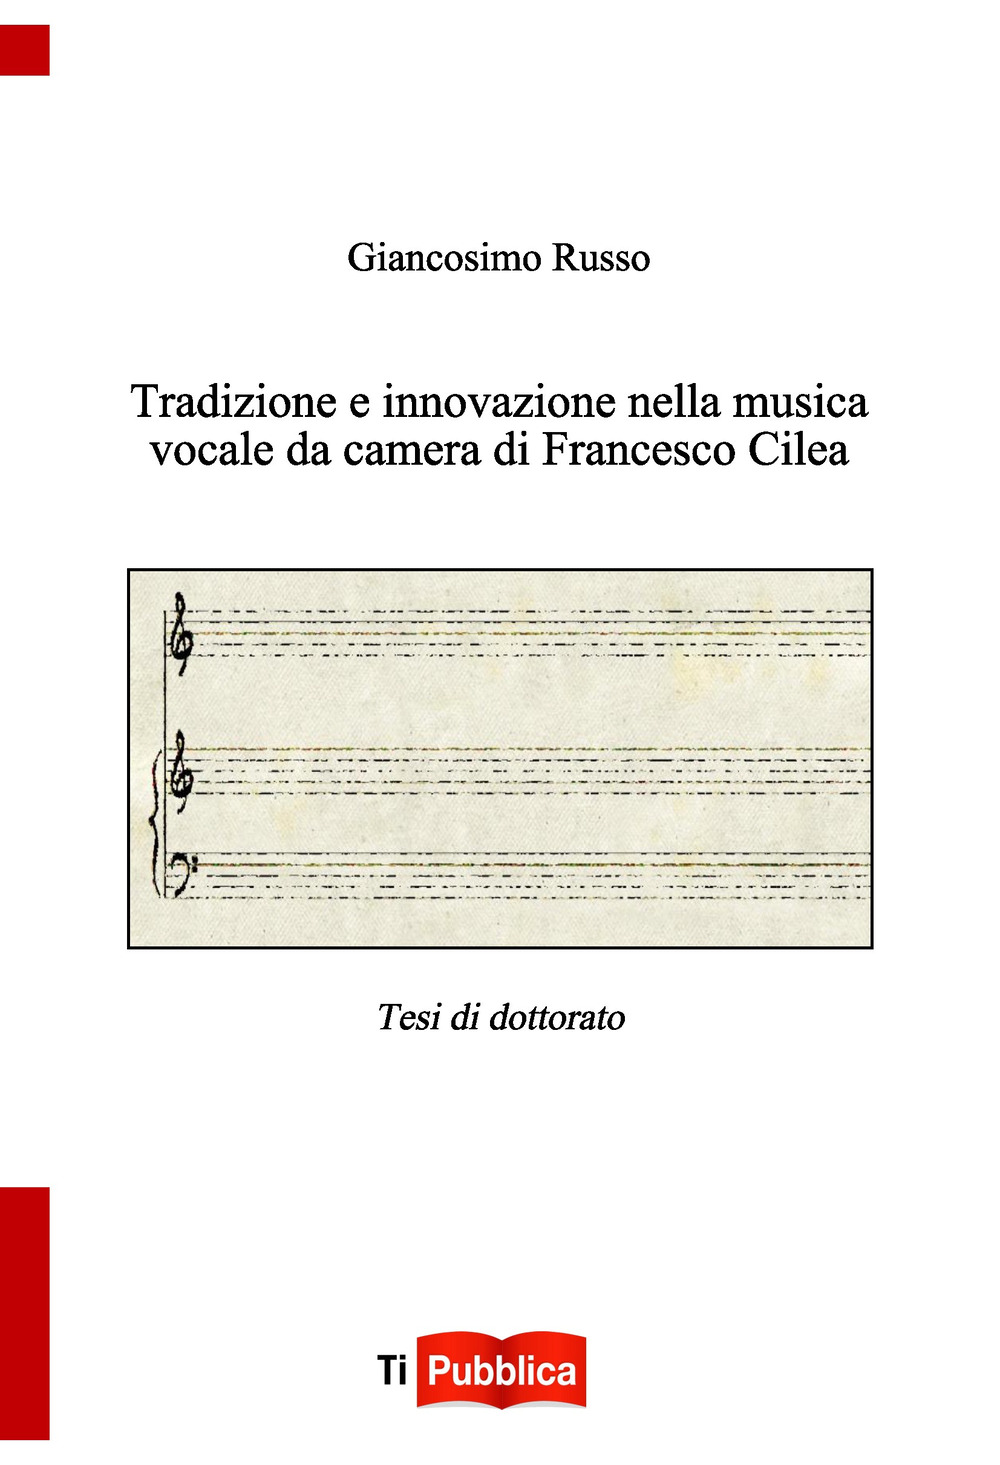 Image of Tradizione e innovazione nella musica vocale da camera di Francesco Cilea